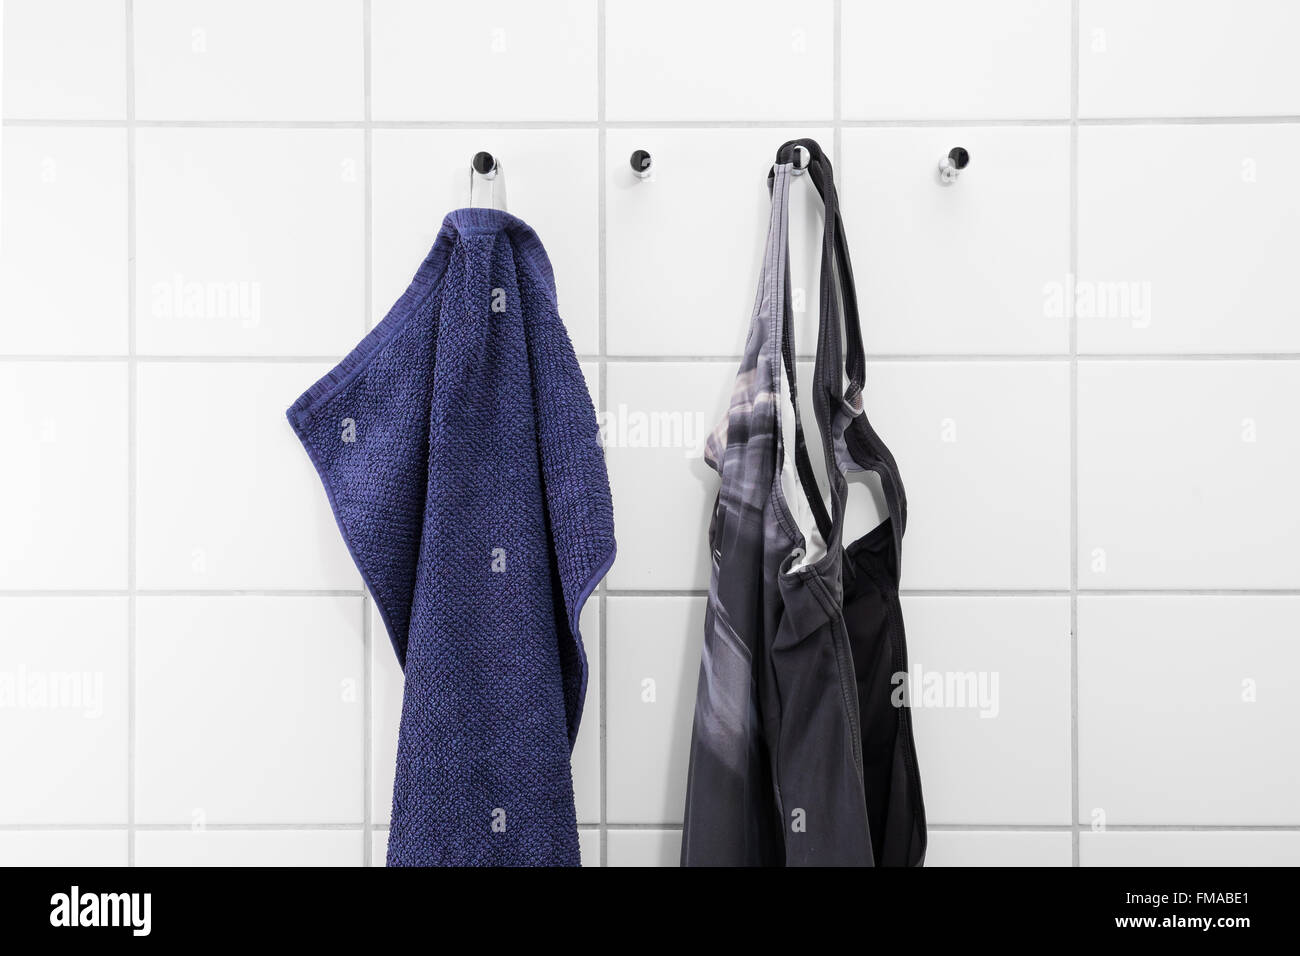 Maillot et serviette accrochée à un mur de carrelage blanc d'une évolution des prix à la baignoire Banque D'Images